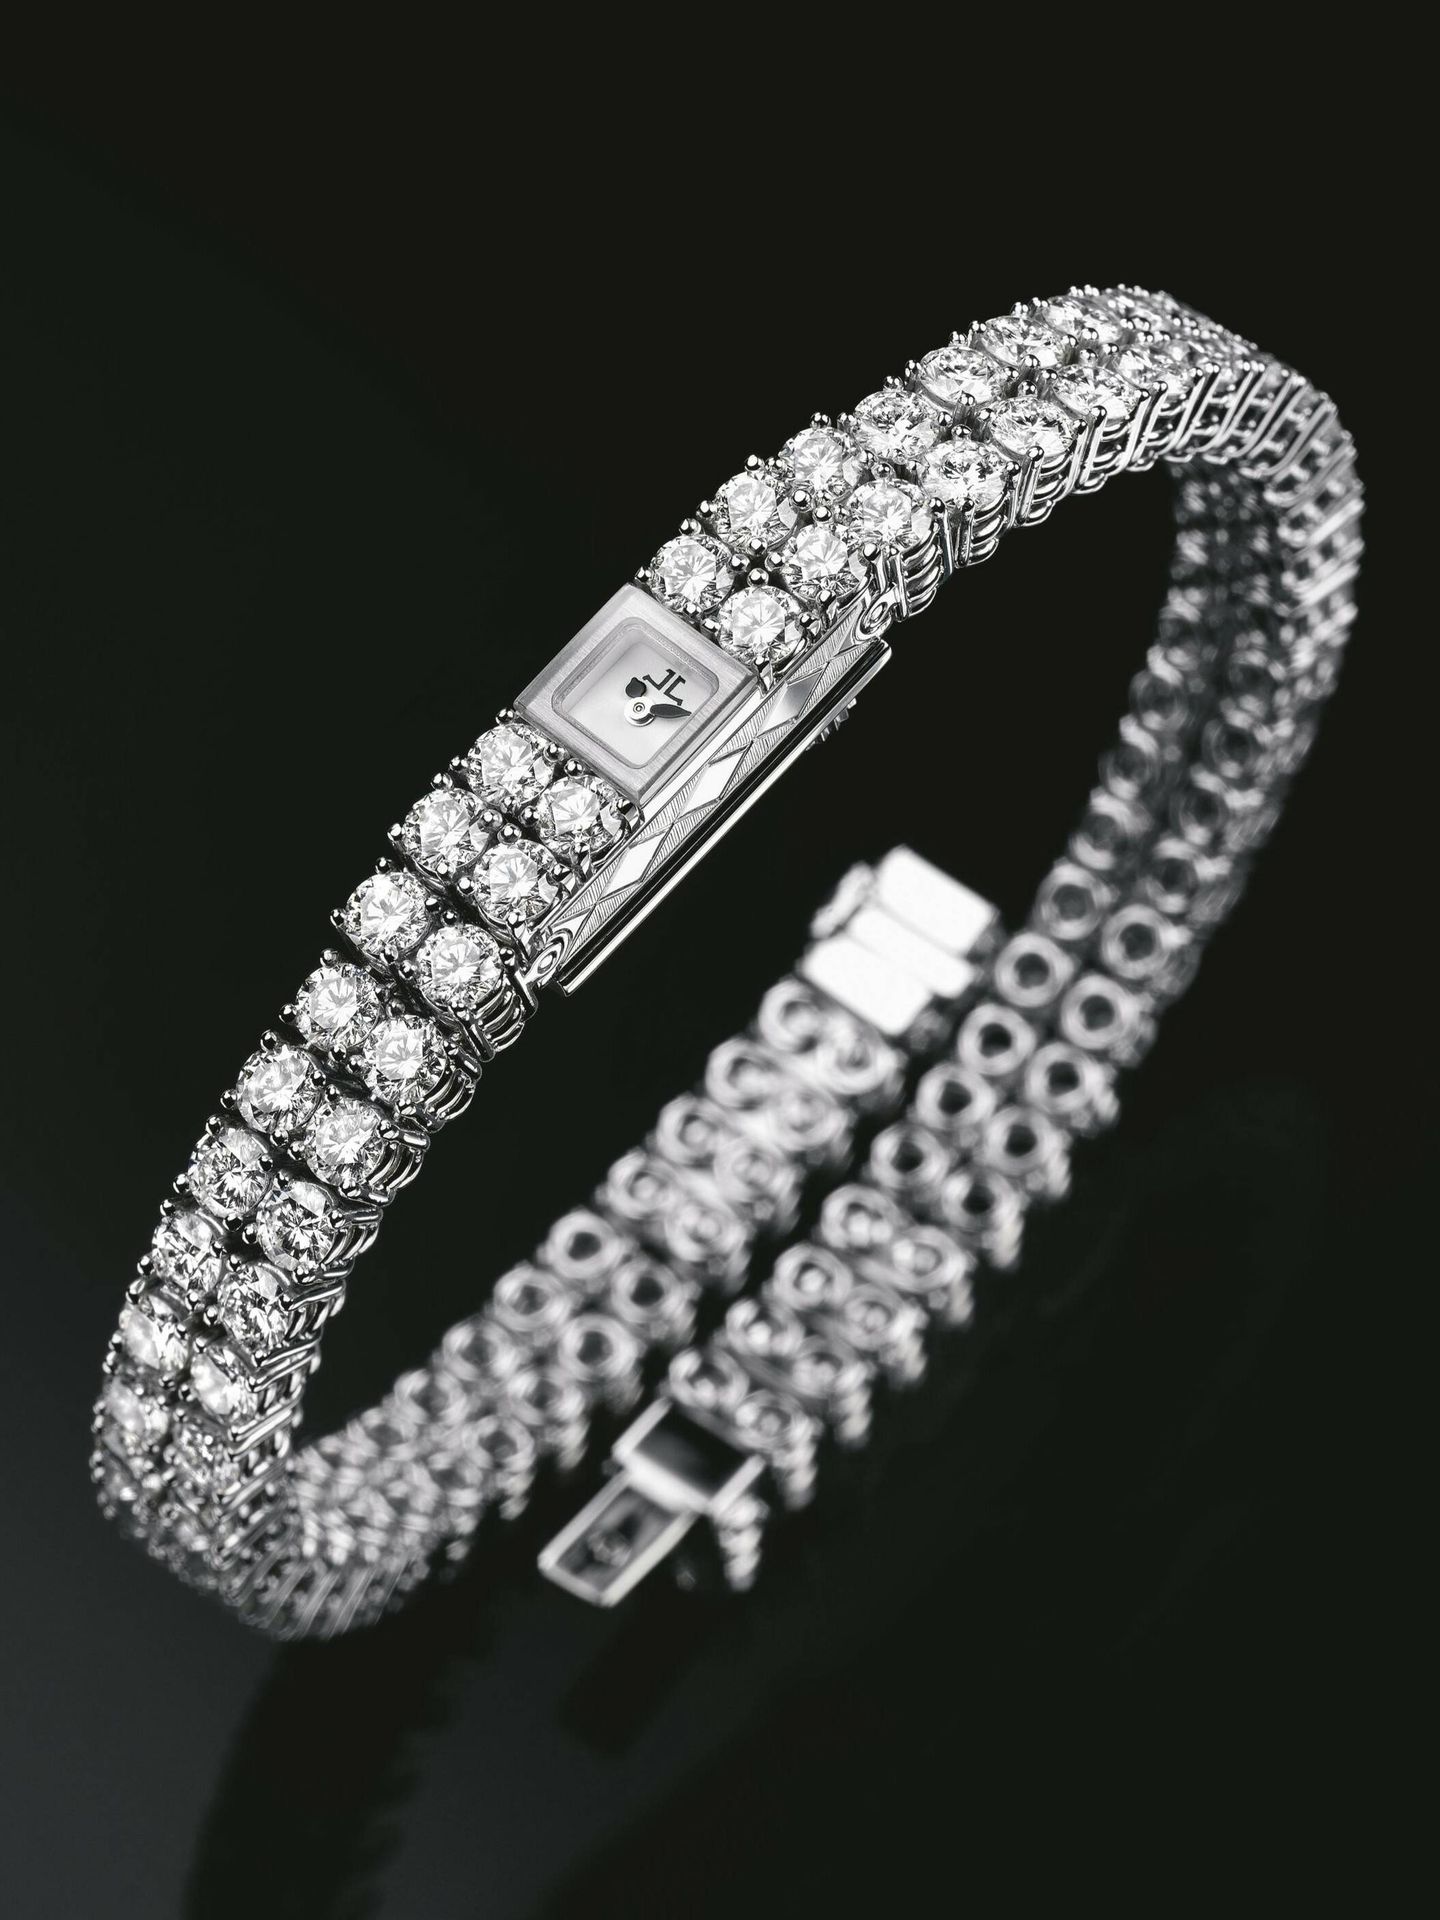 El brazalete de Jaeger-LeCoultre adornado con 110 diamantes que le dan a la pieza una gracia atemporal. (Cortesía)